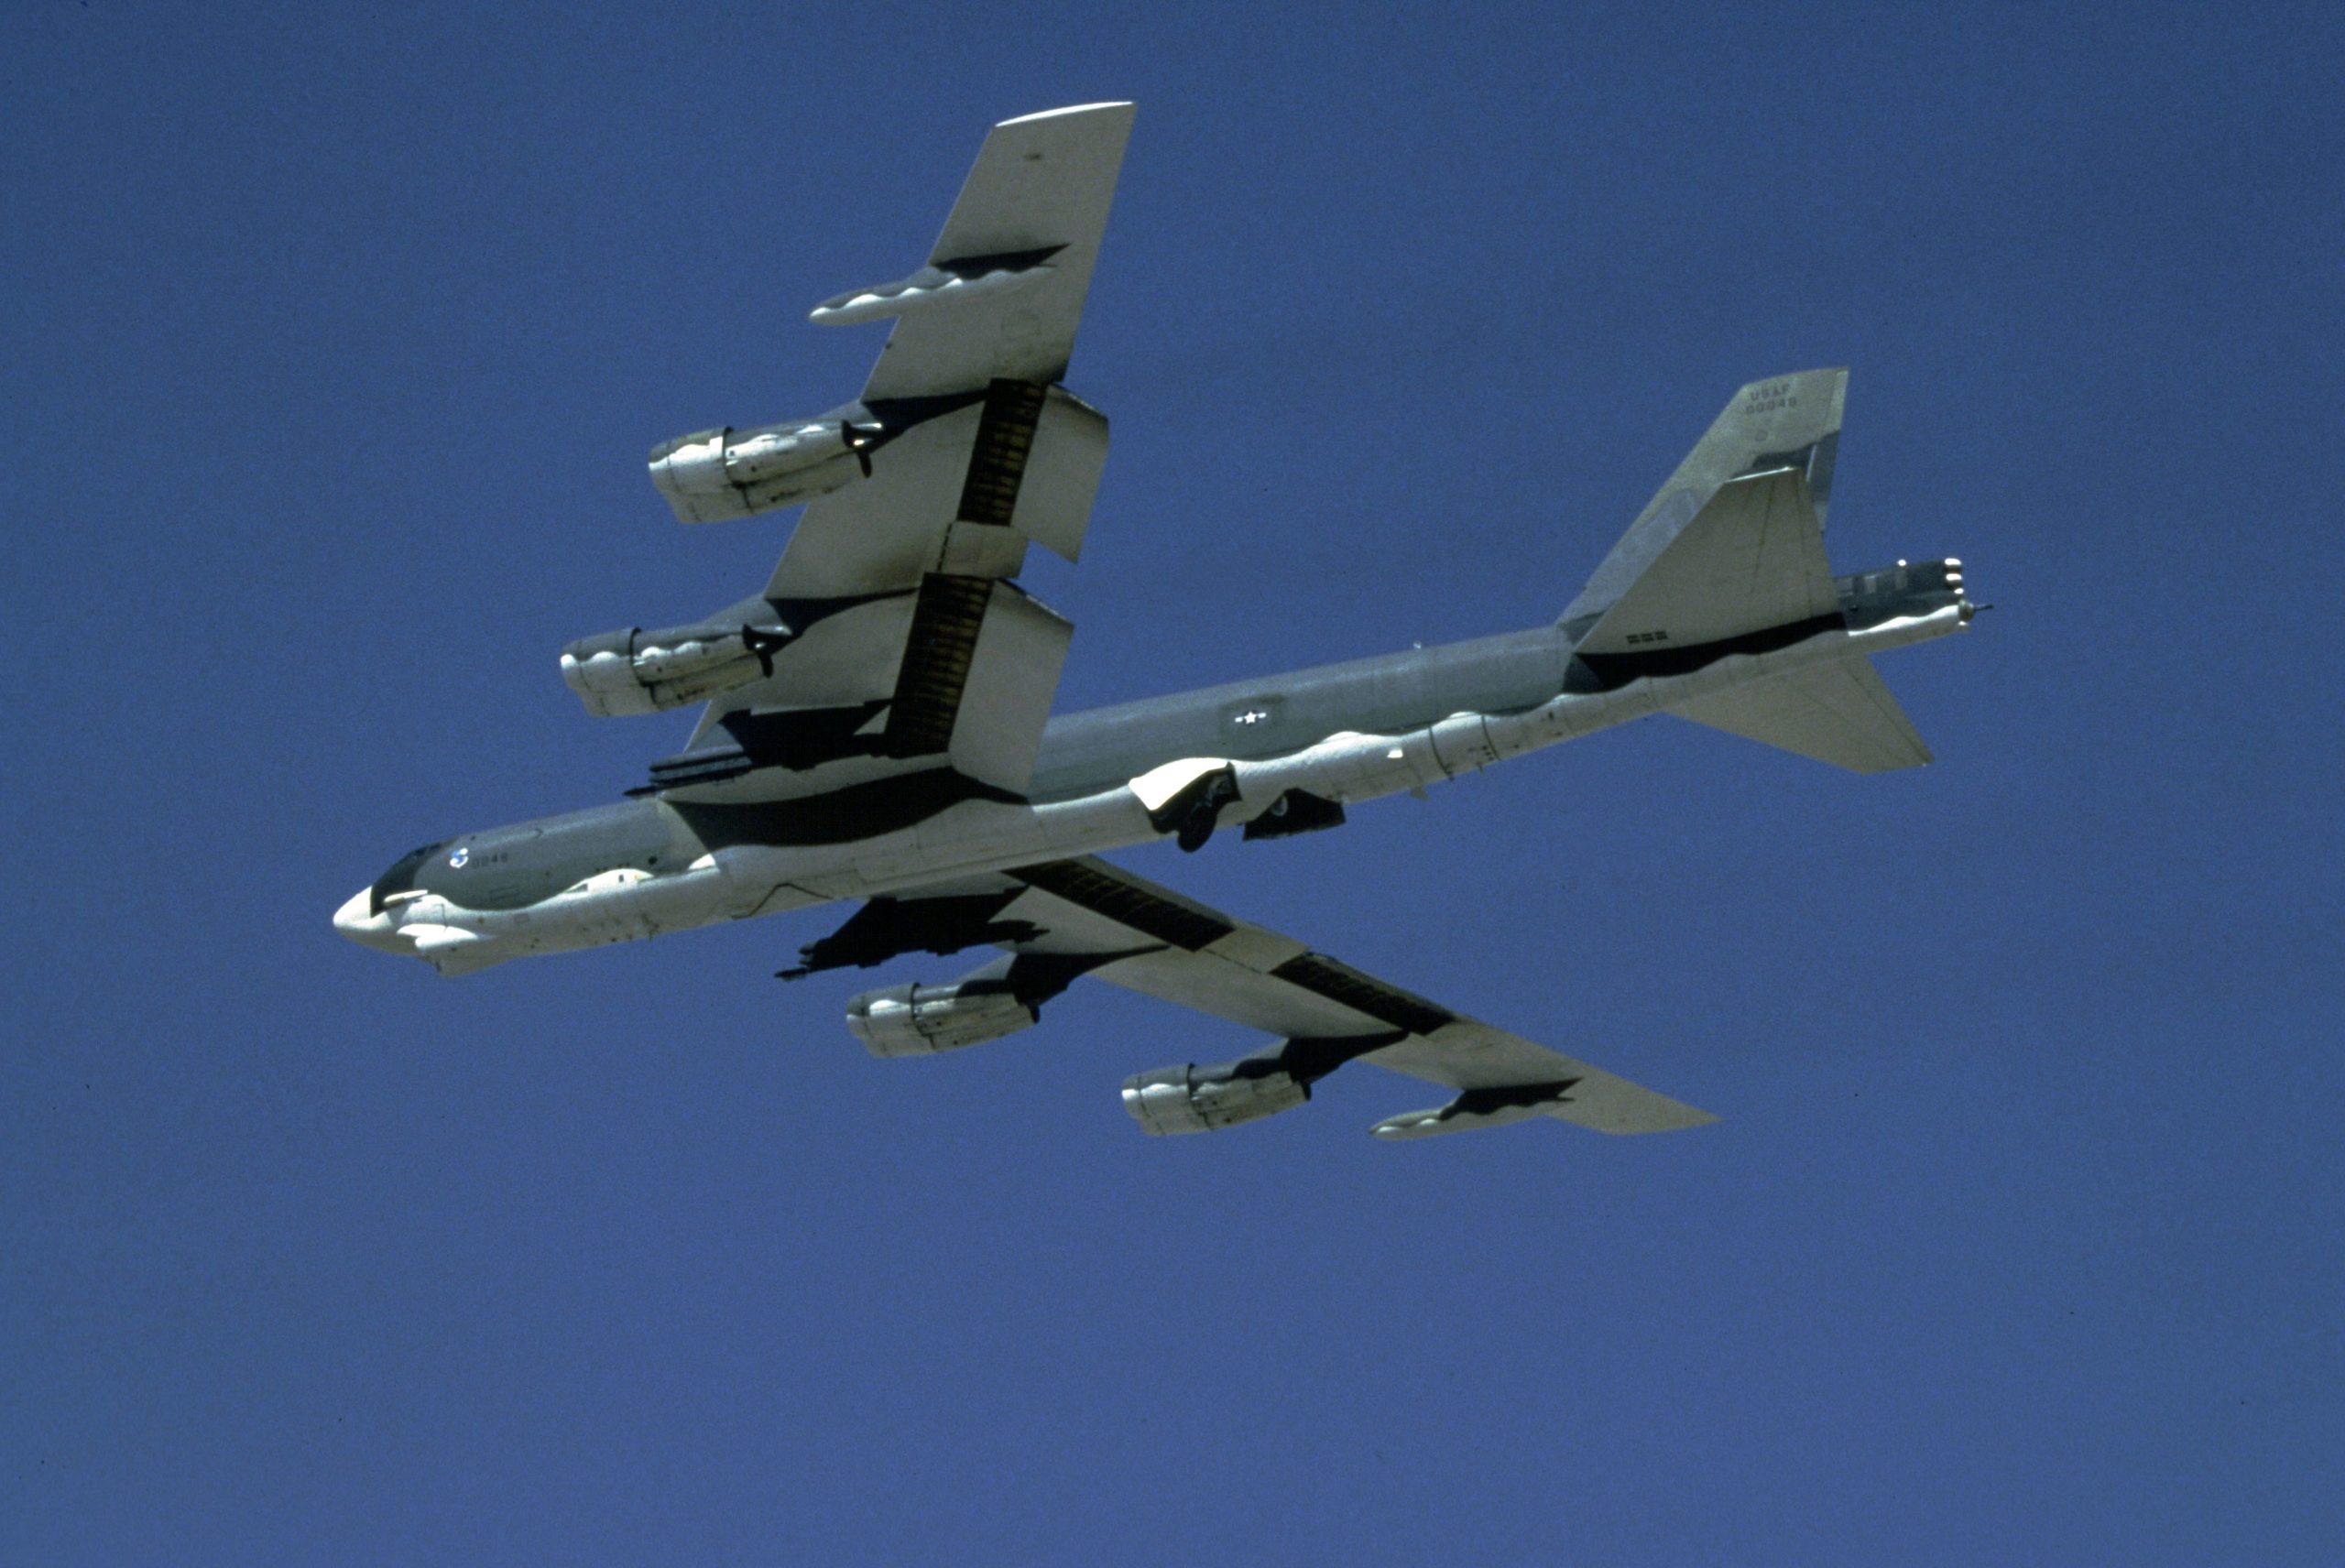 Σε απόσταση 200 χλμ. από την Αγία Πετρούπολη έφτασε βομβαρδιστικό B-52H της αμερικανικής Αεροπορίας!